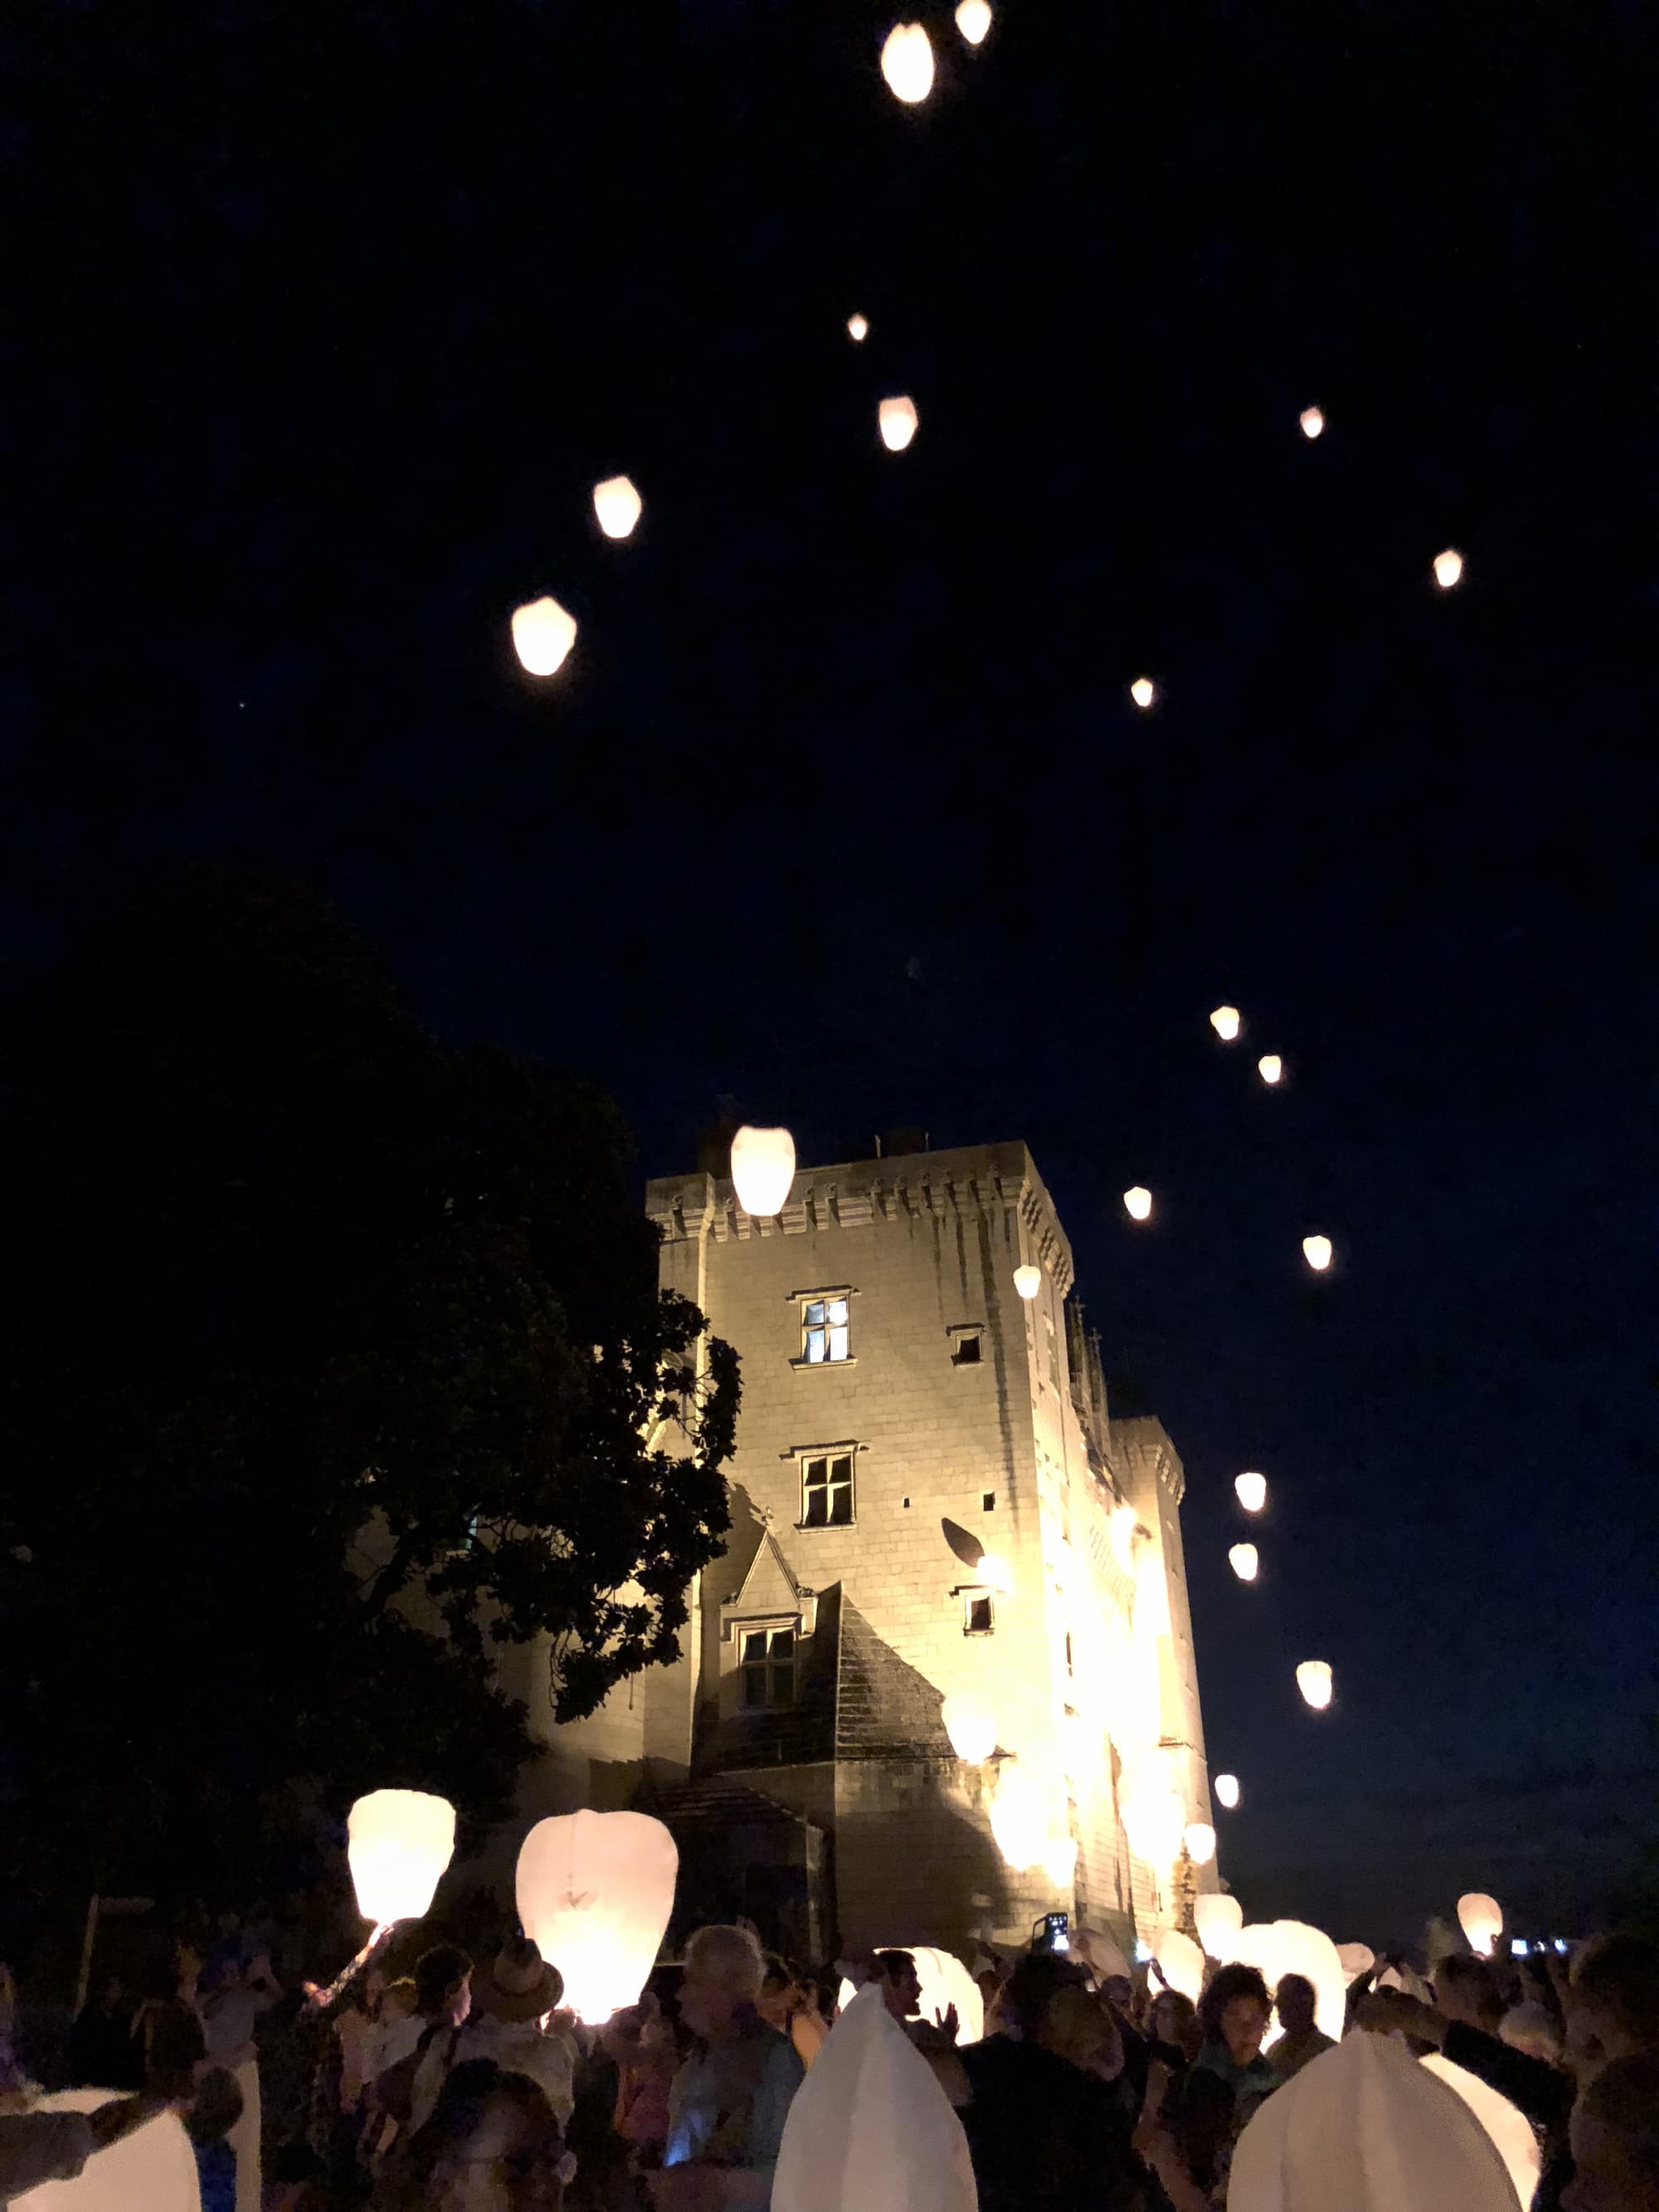 Lanterne dans le ciel du château musée d'art contemporain de Montsoreau